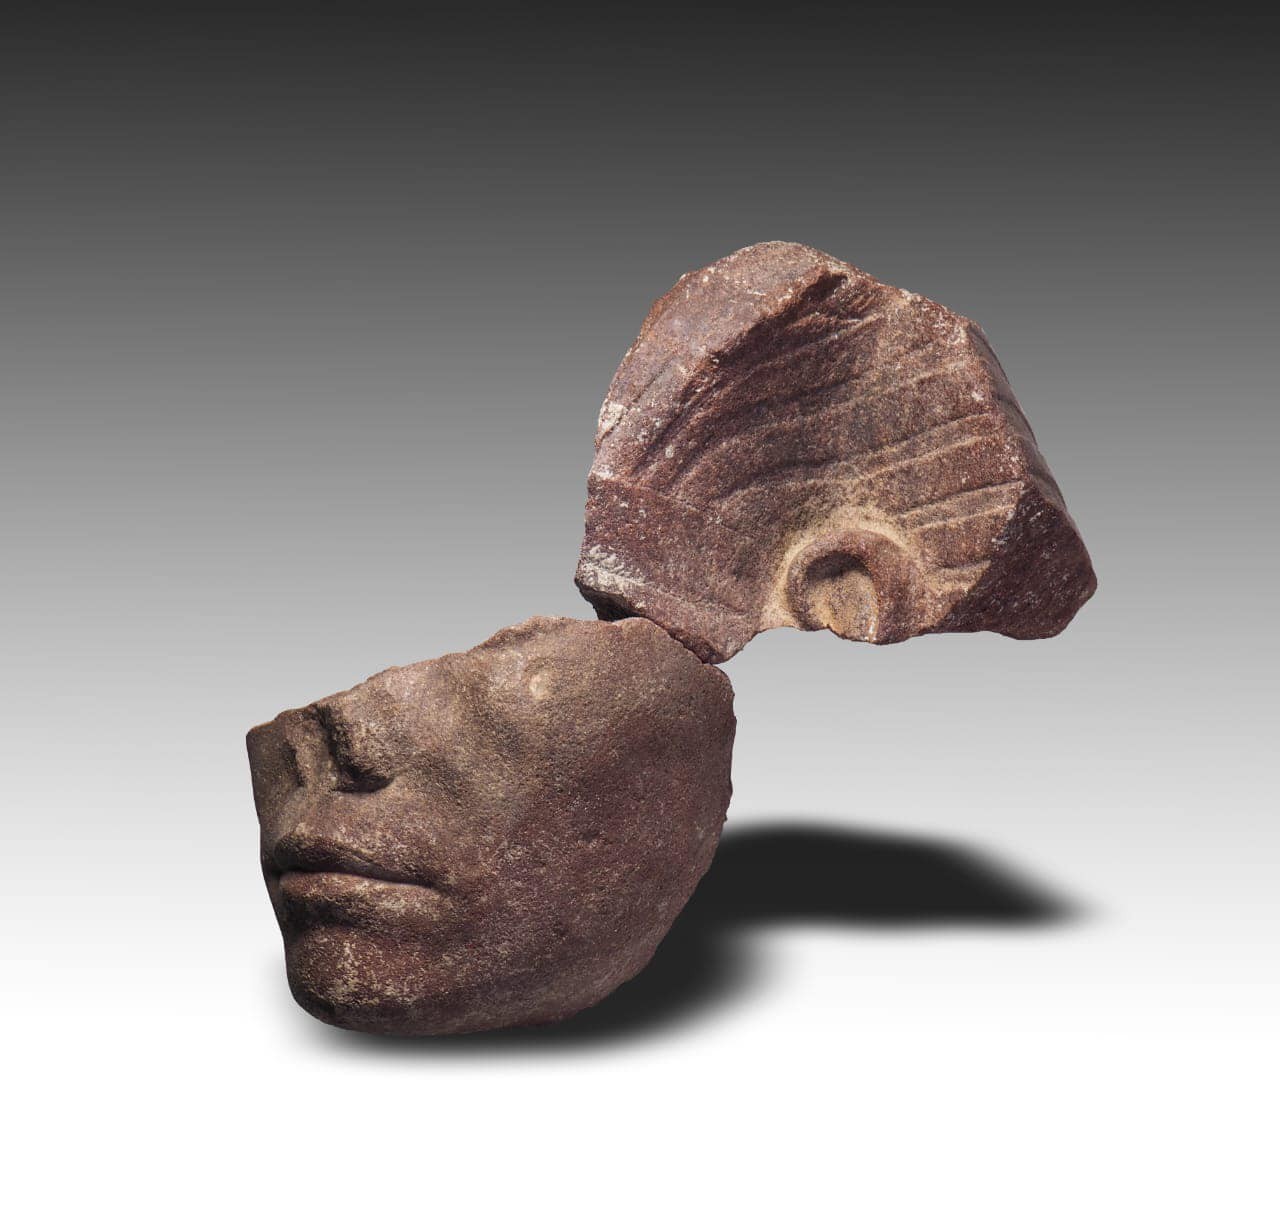 Fragmentos da cabeça da esfinge de faraó egípcio  — Foto: Ministry of Tourism and Antiquities/Reprodução/Facebook